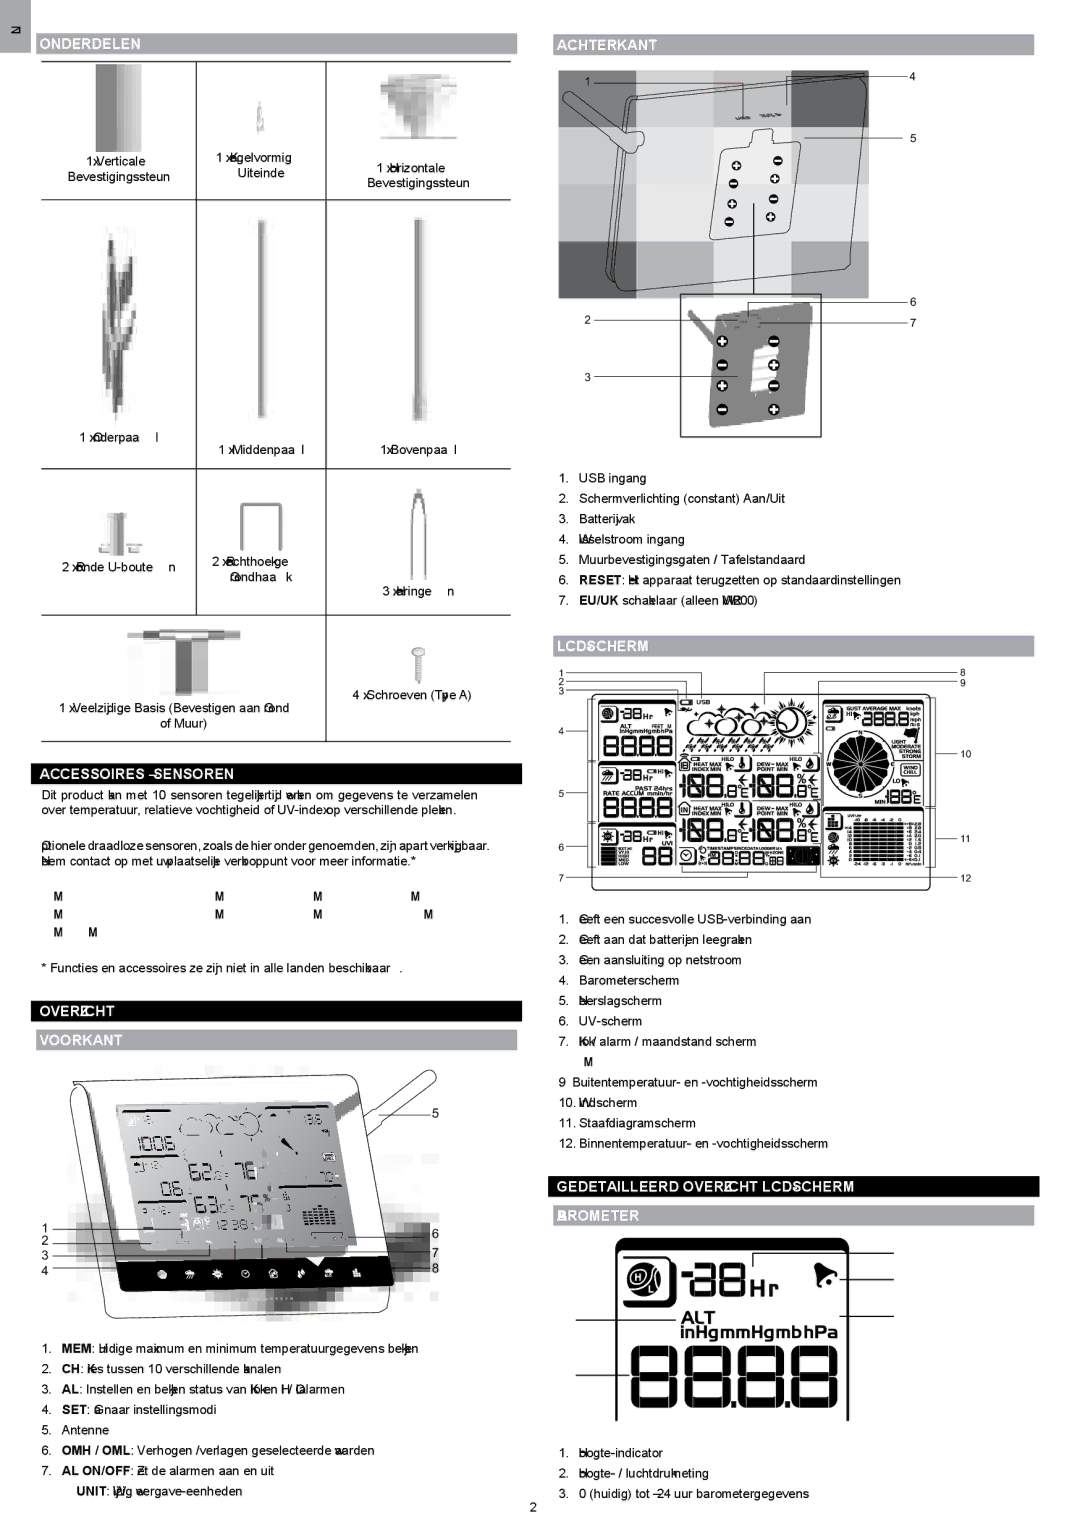 Oregon Scientific WMR200 manual Onderdelen, Accessoires Sensoren, Overzicht Voorkant, Achterkant, Lcd-Scherm 